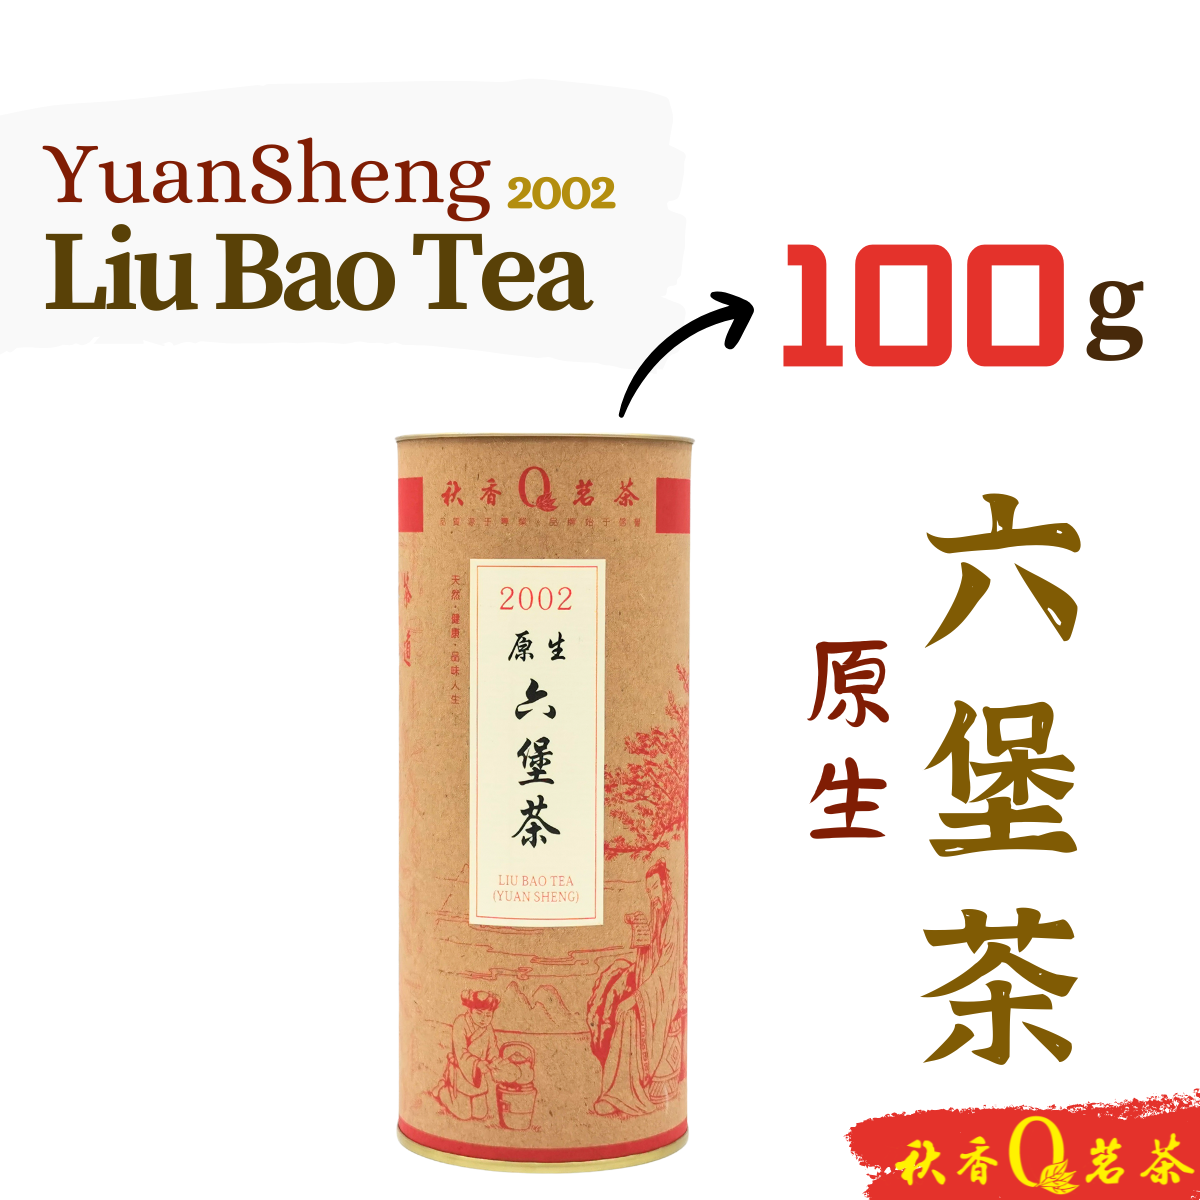 原生六堡茶 Liu Bao Tea (Yuan Sheng)【100g】|【Dark Tea 黑茶】